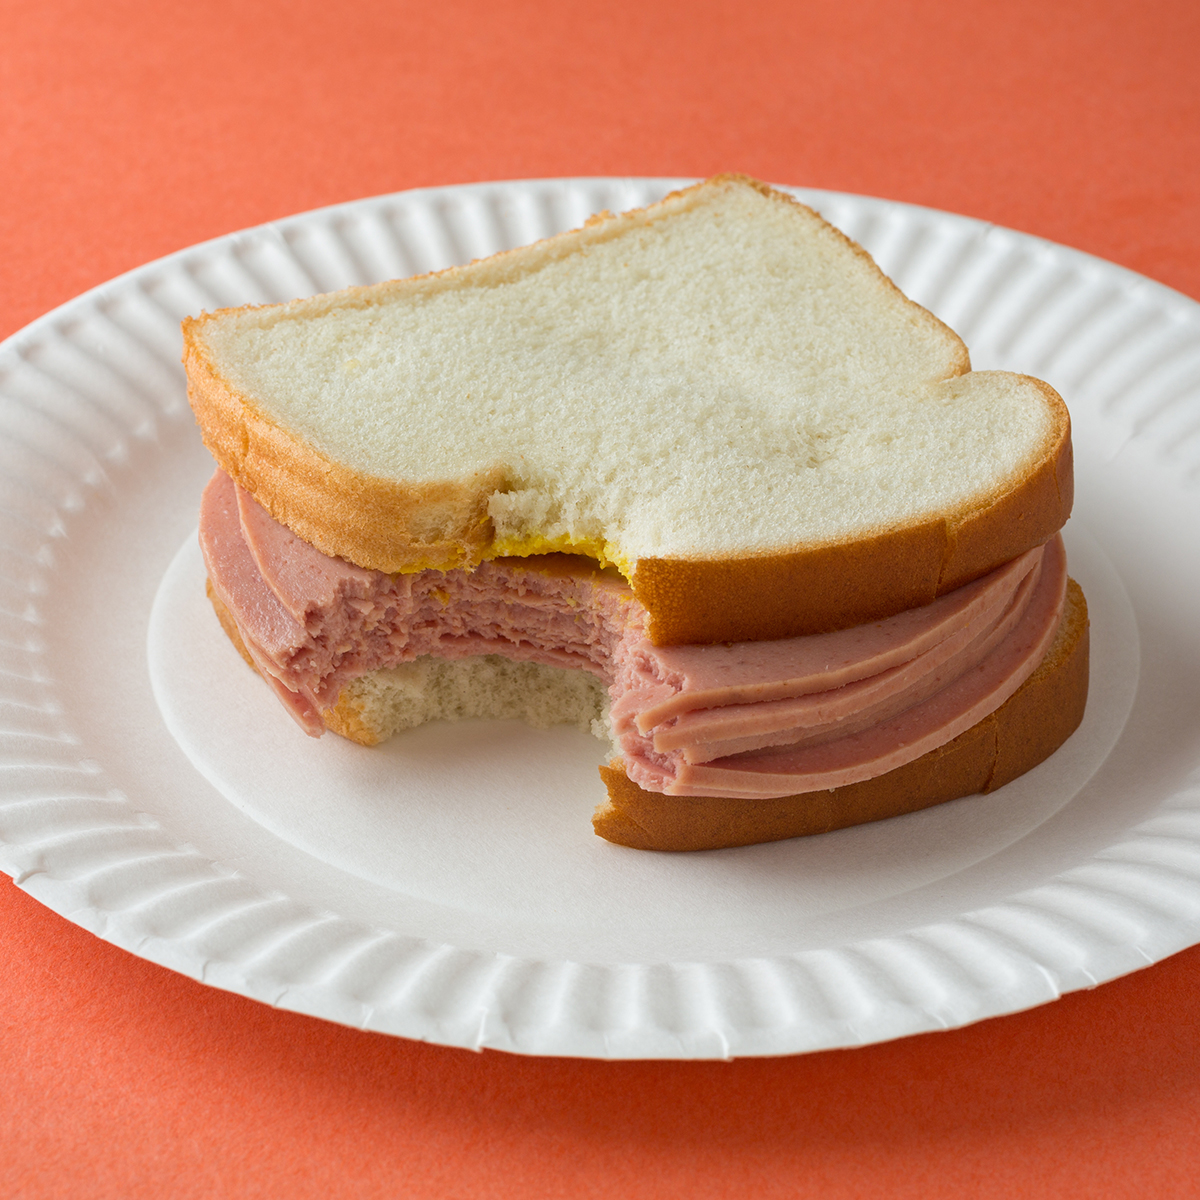 bologna sandwich with white bread